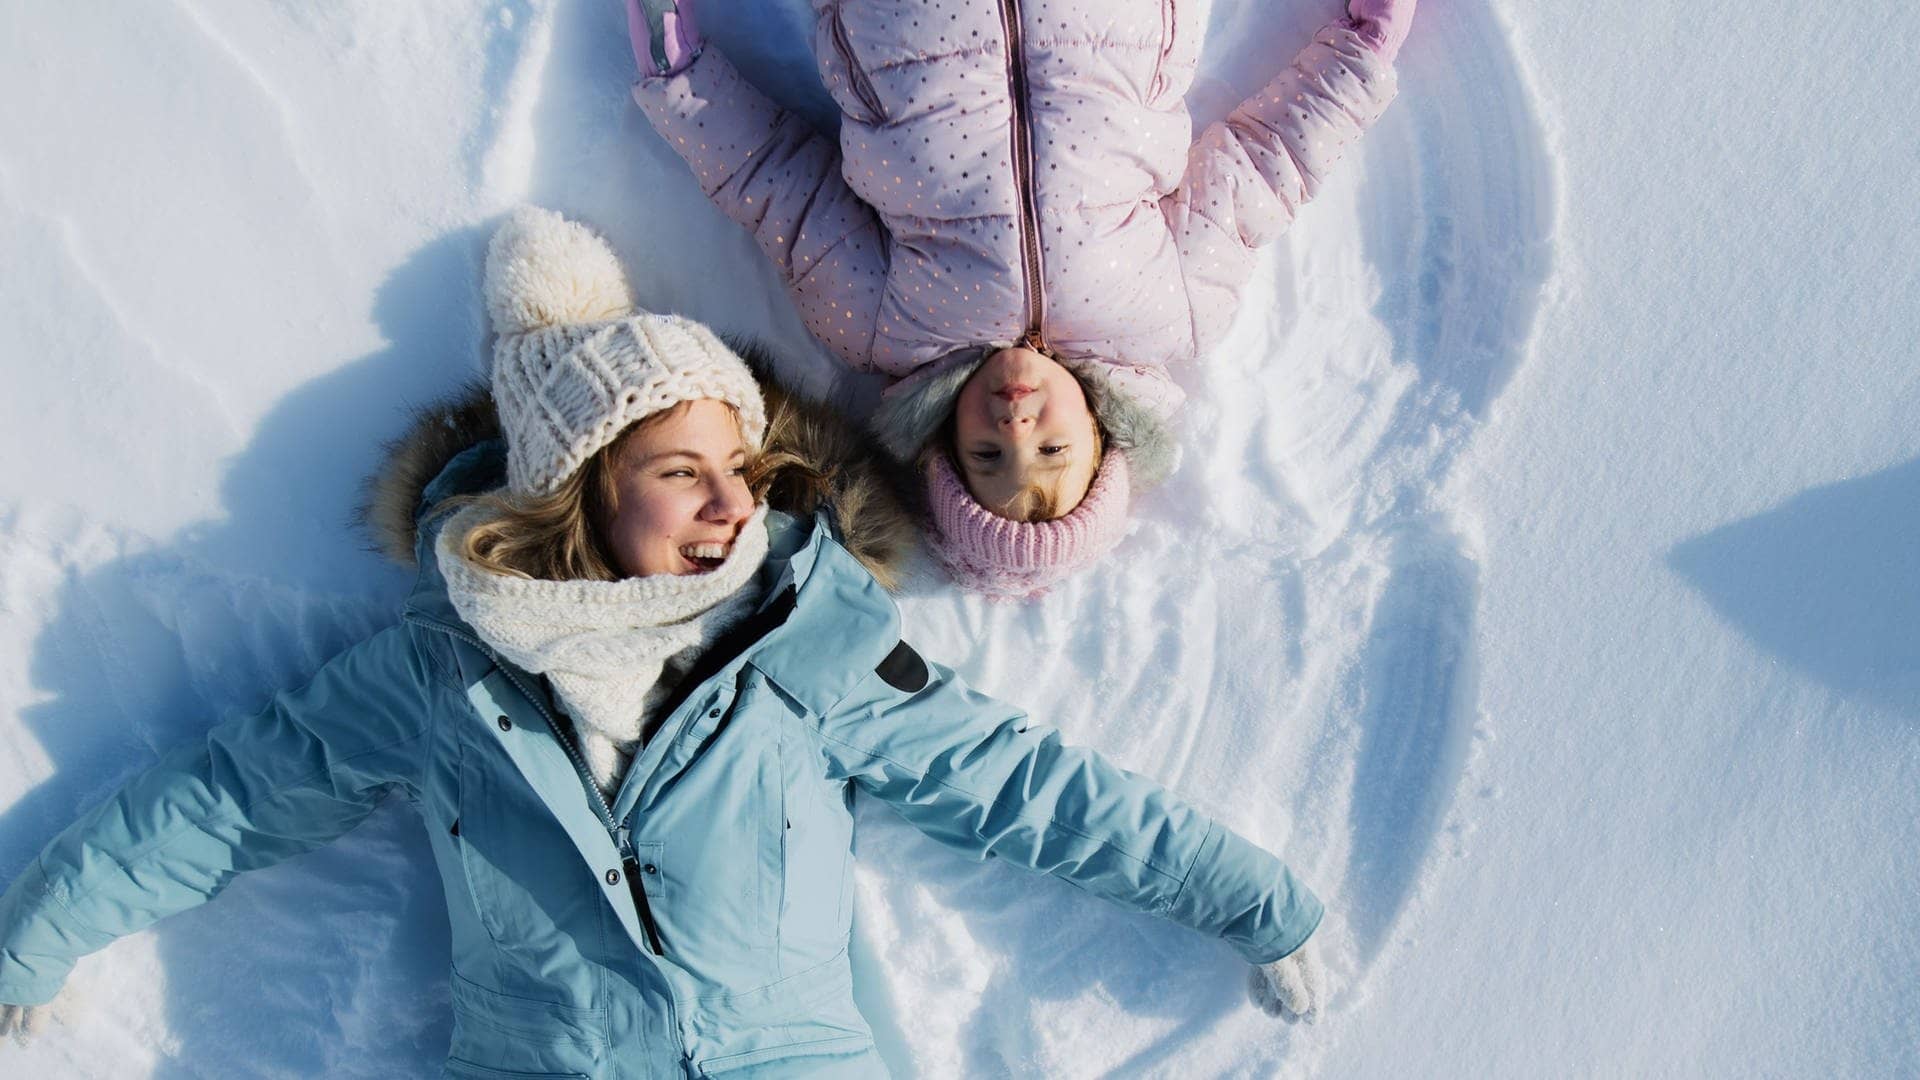 Mutter und Kind liegen im Schnee, lachen und machen einen Schneeengel